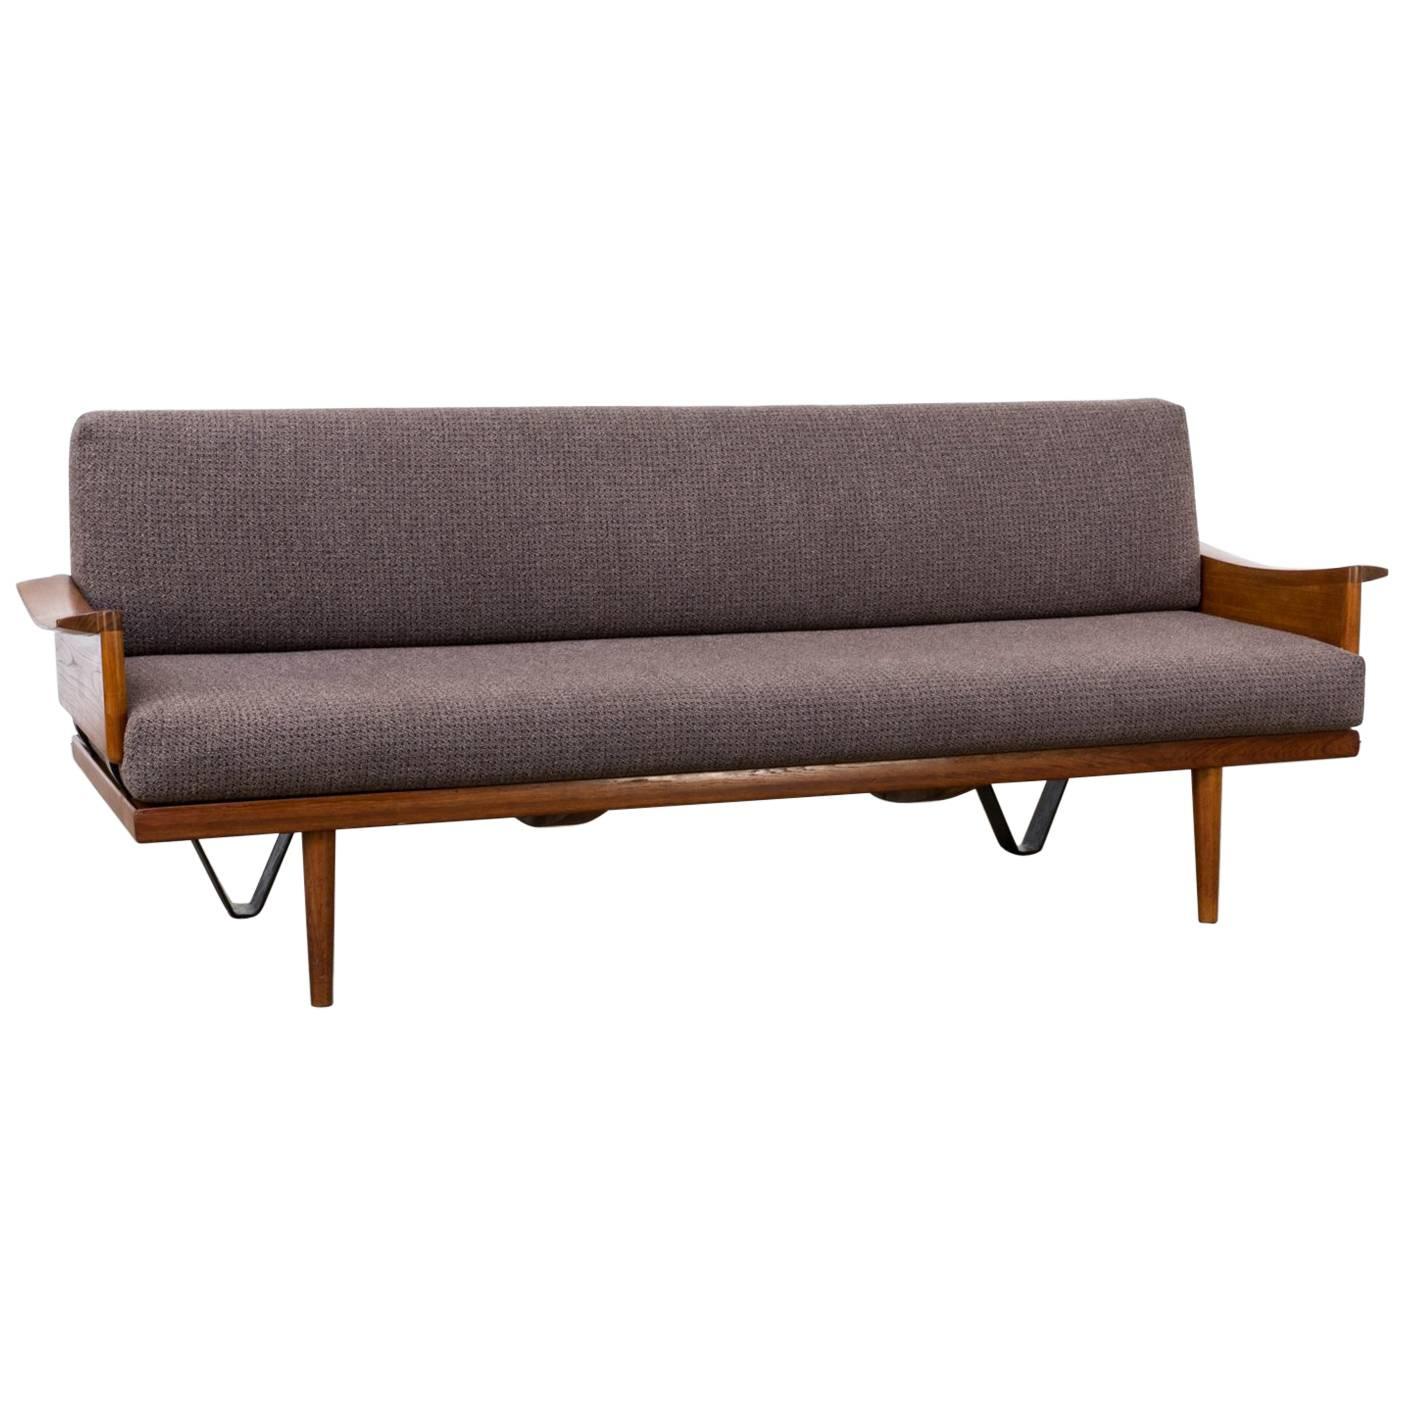 1960s, Edvard & Tove Kindt Larsen Sofa for Gustav Bahus For Sale